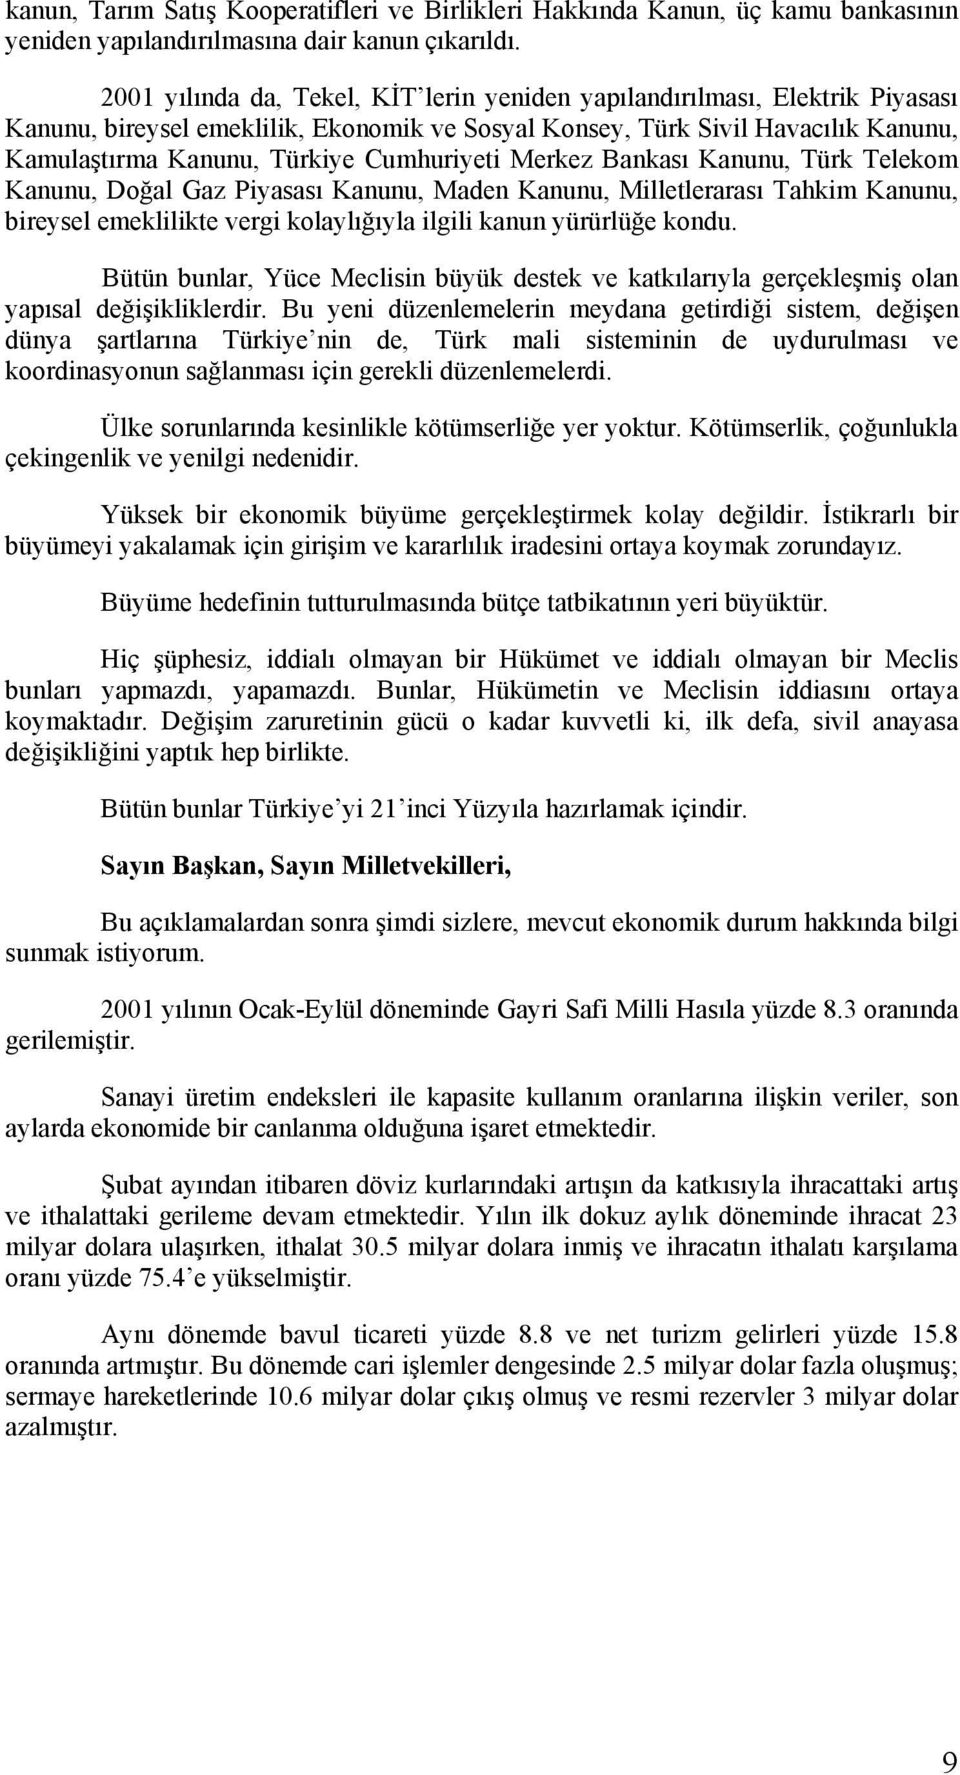 Cumhuriyeti Merkez Bankası Kanunu, Türk Telekom Kanunu, Doğal Gaz Piyasası Kanunu, Maden Kanunu, Milletlerarası Tahkim Kanunu, bireysel emeklilikte vergi kolaylığıyla ilgili kanun yürürlüğe kondu.